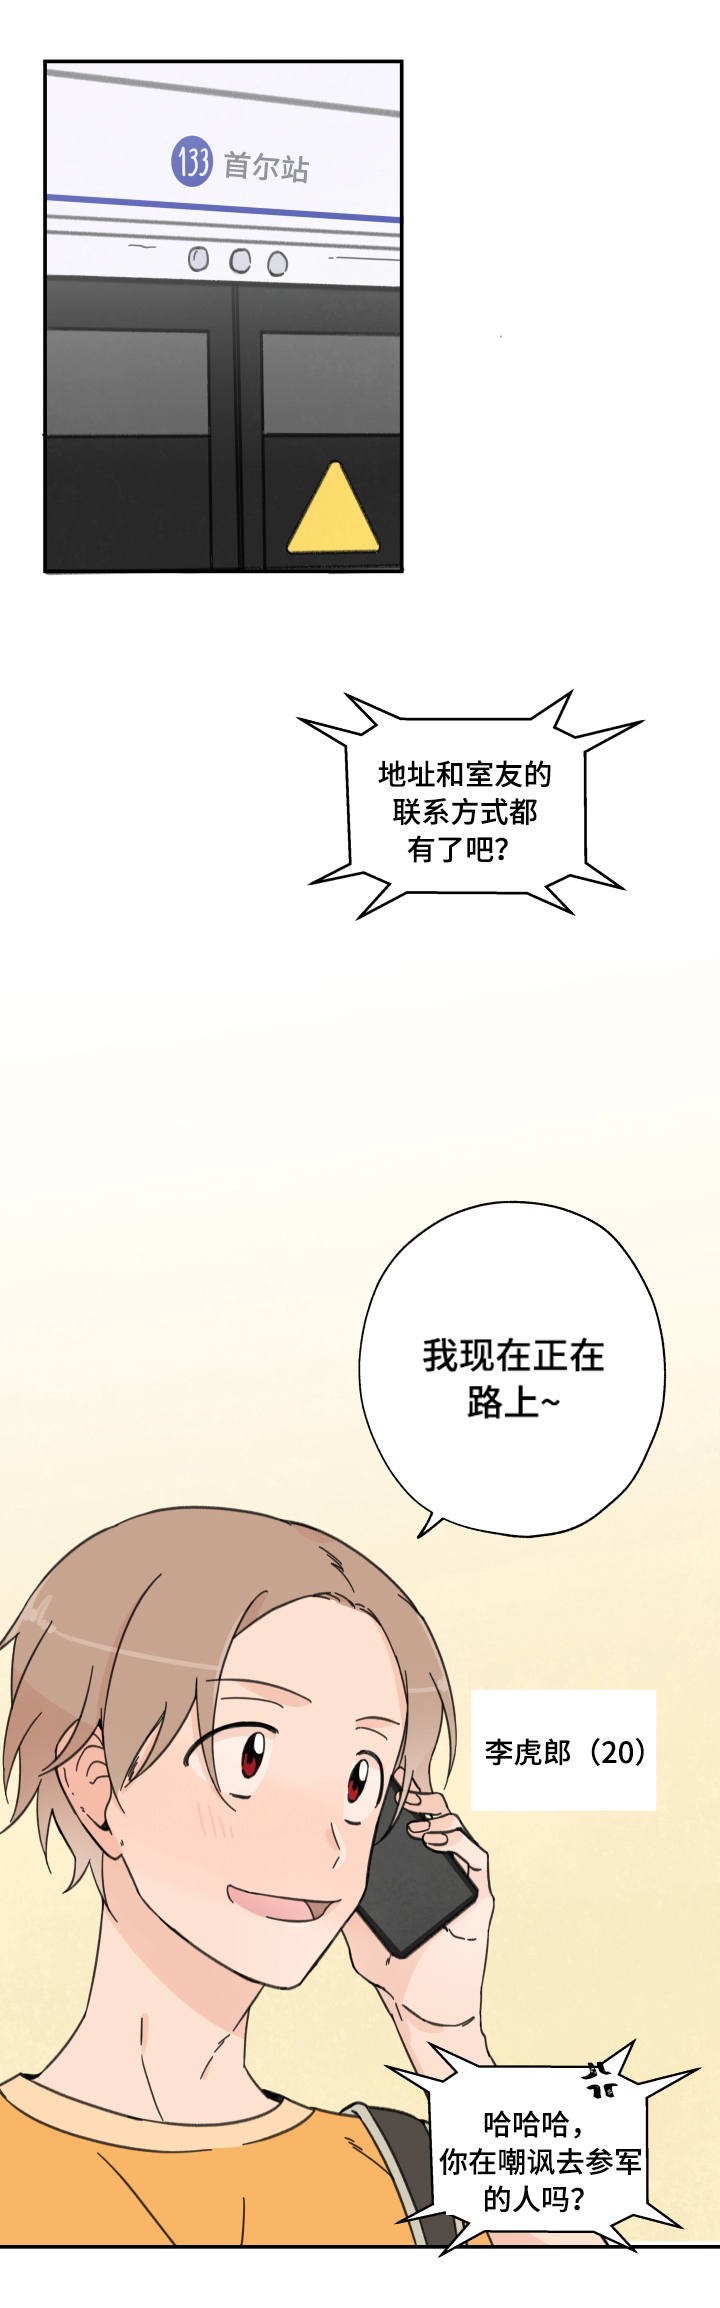 《青涩长成》— 免费漫画 —（无删版全文在线阅读）